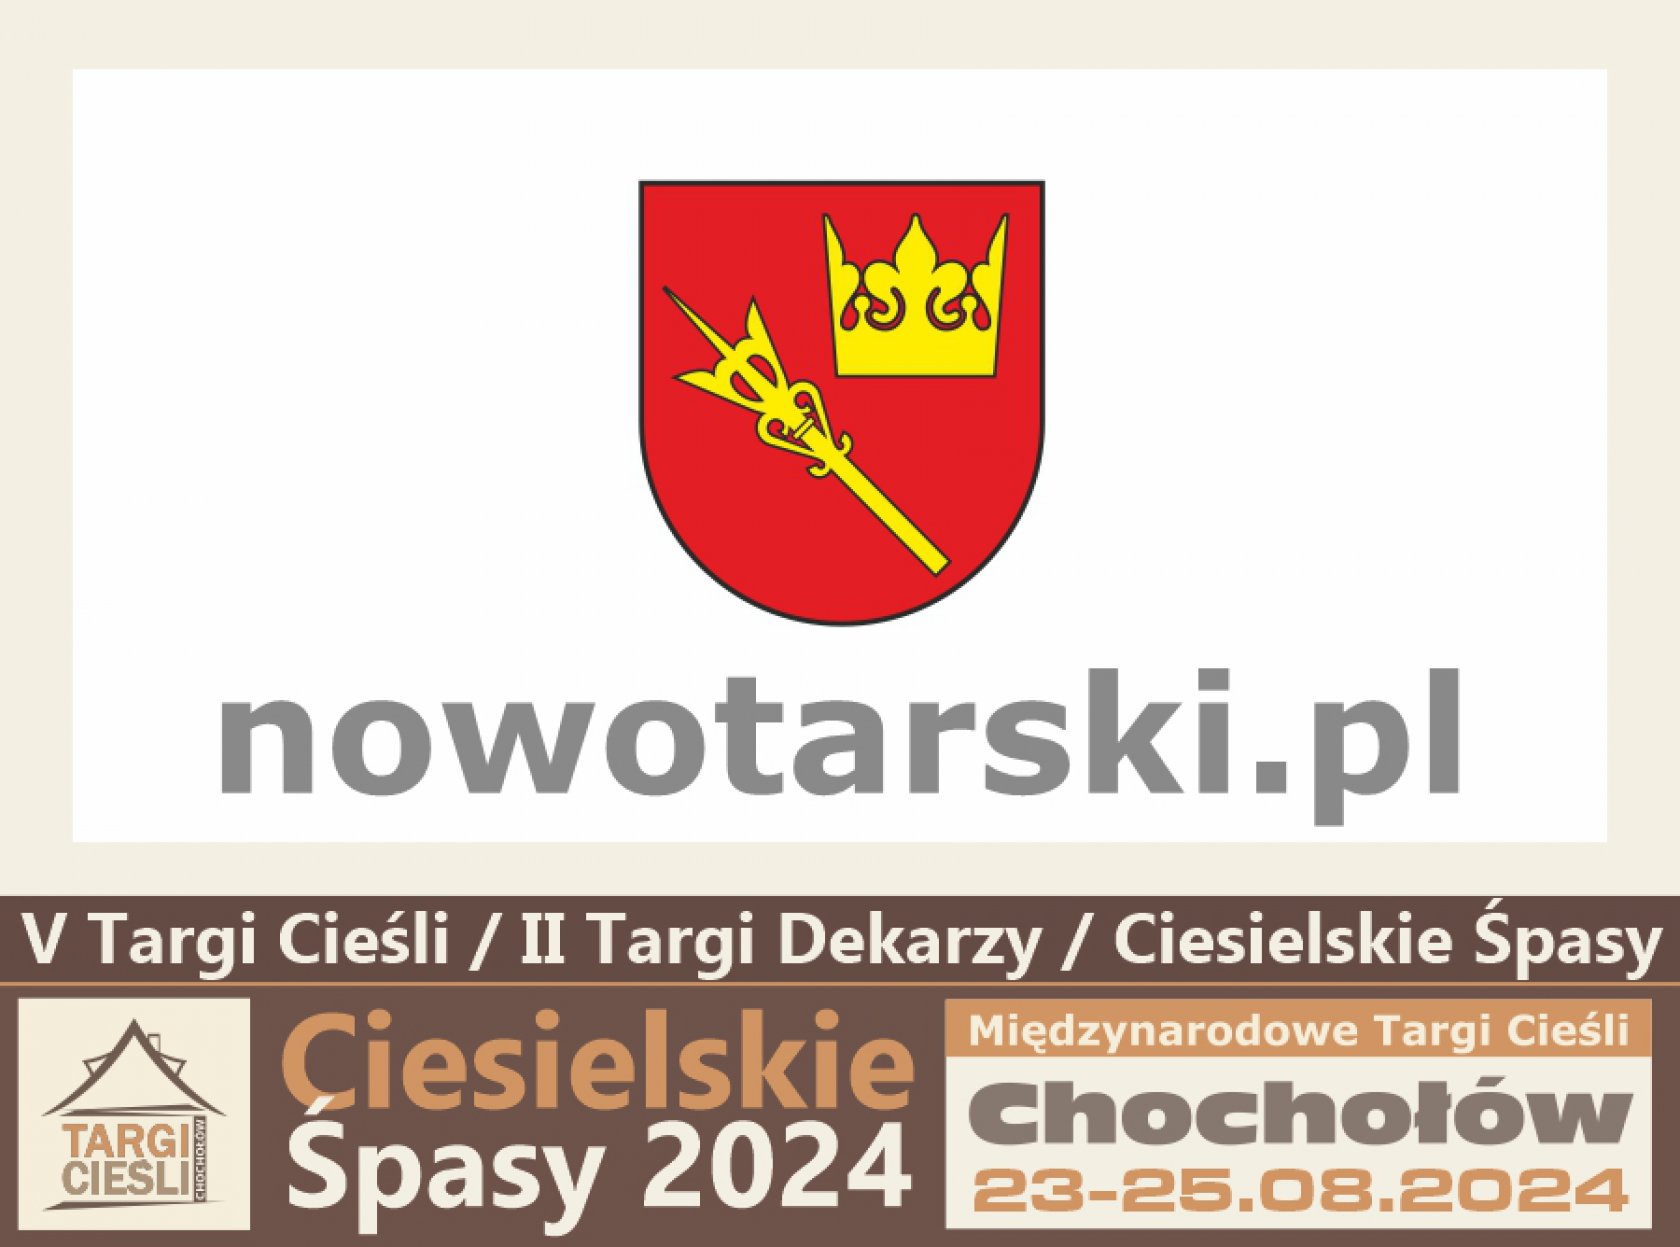 Zdjęcie Nowotarski.pl - przyjazny Powiat wspiera Ciesielskie Śpasy, kultywując tradycje góralskie